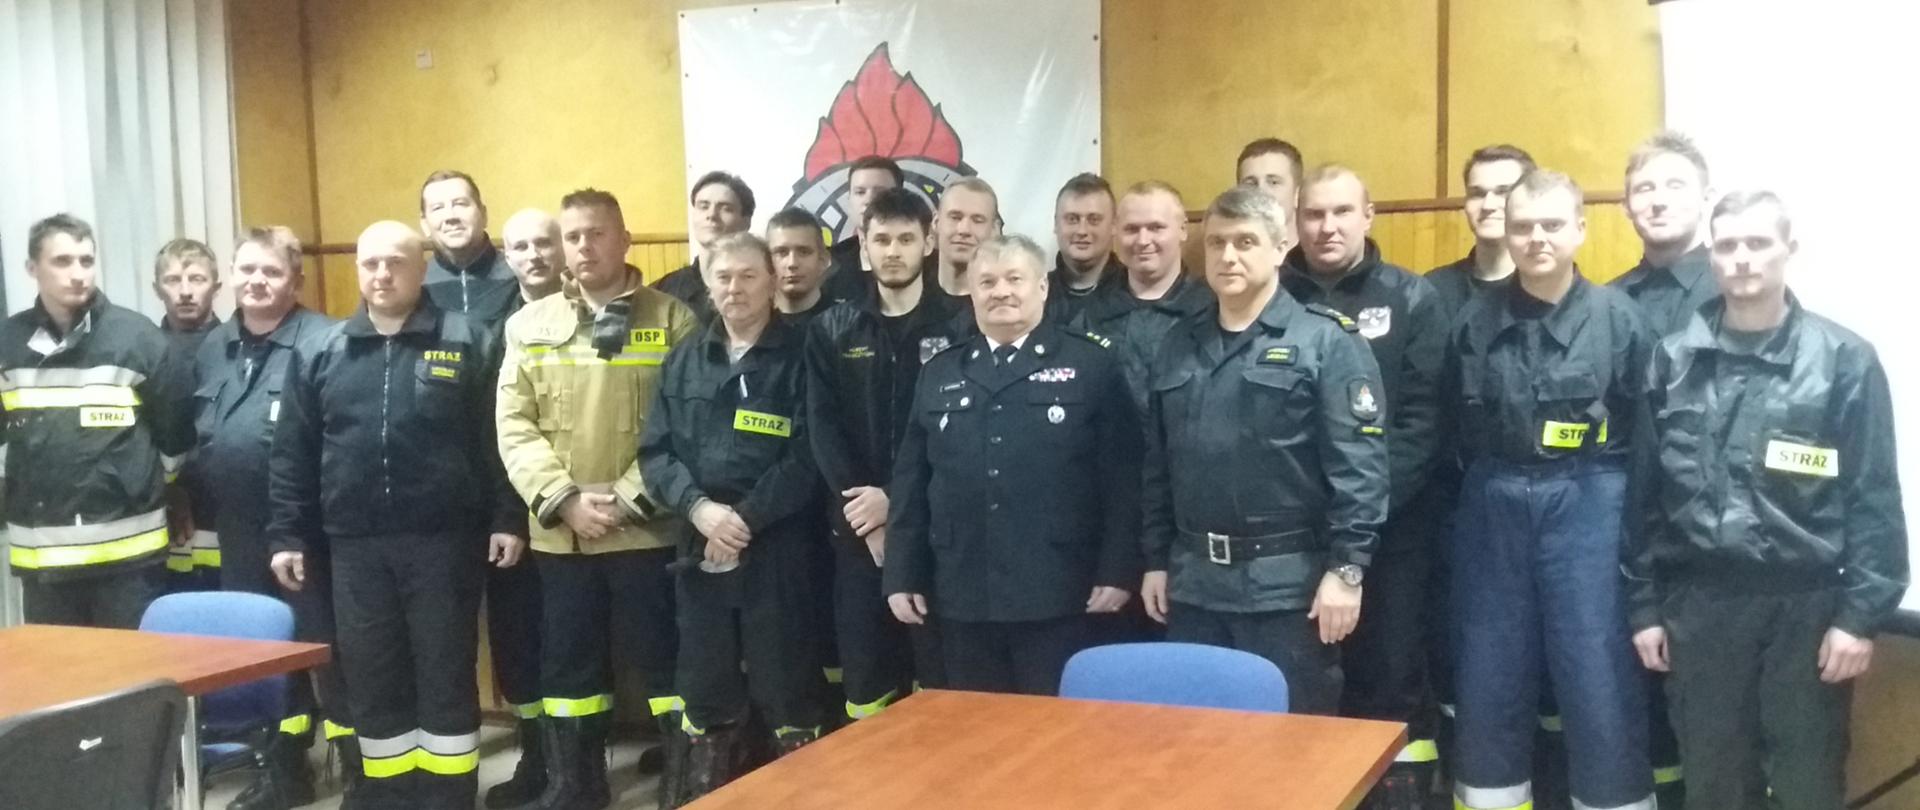 Szkolenie podstawowe Strażaków Ratowników Ochotniczych Straży Pożarnych Listopad 2021